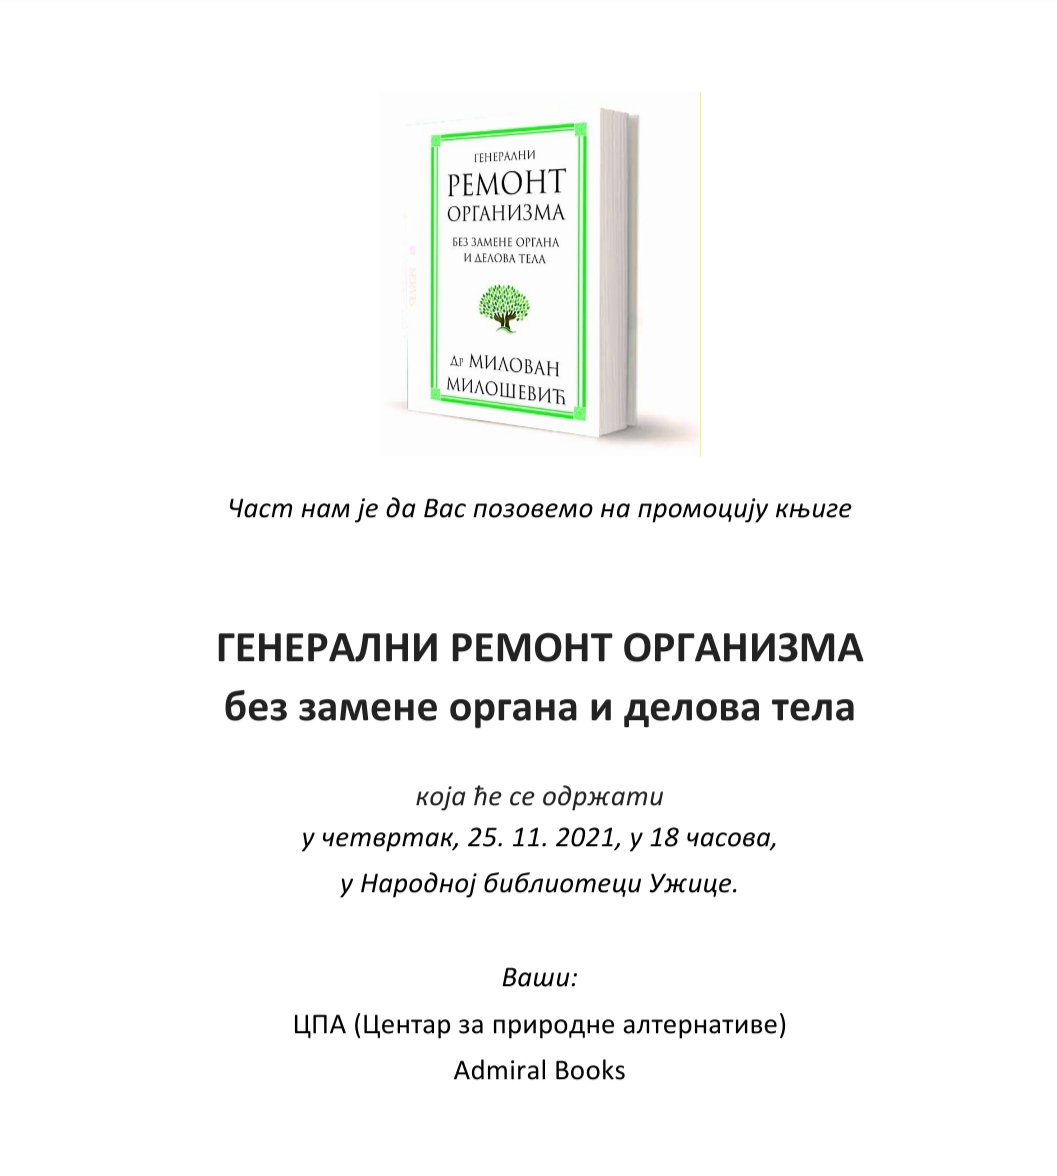 Promocija knjige „Generalni remont organizma bez zamene organa i delova tela”